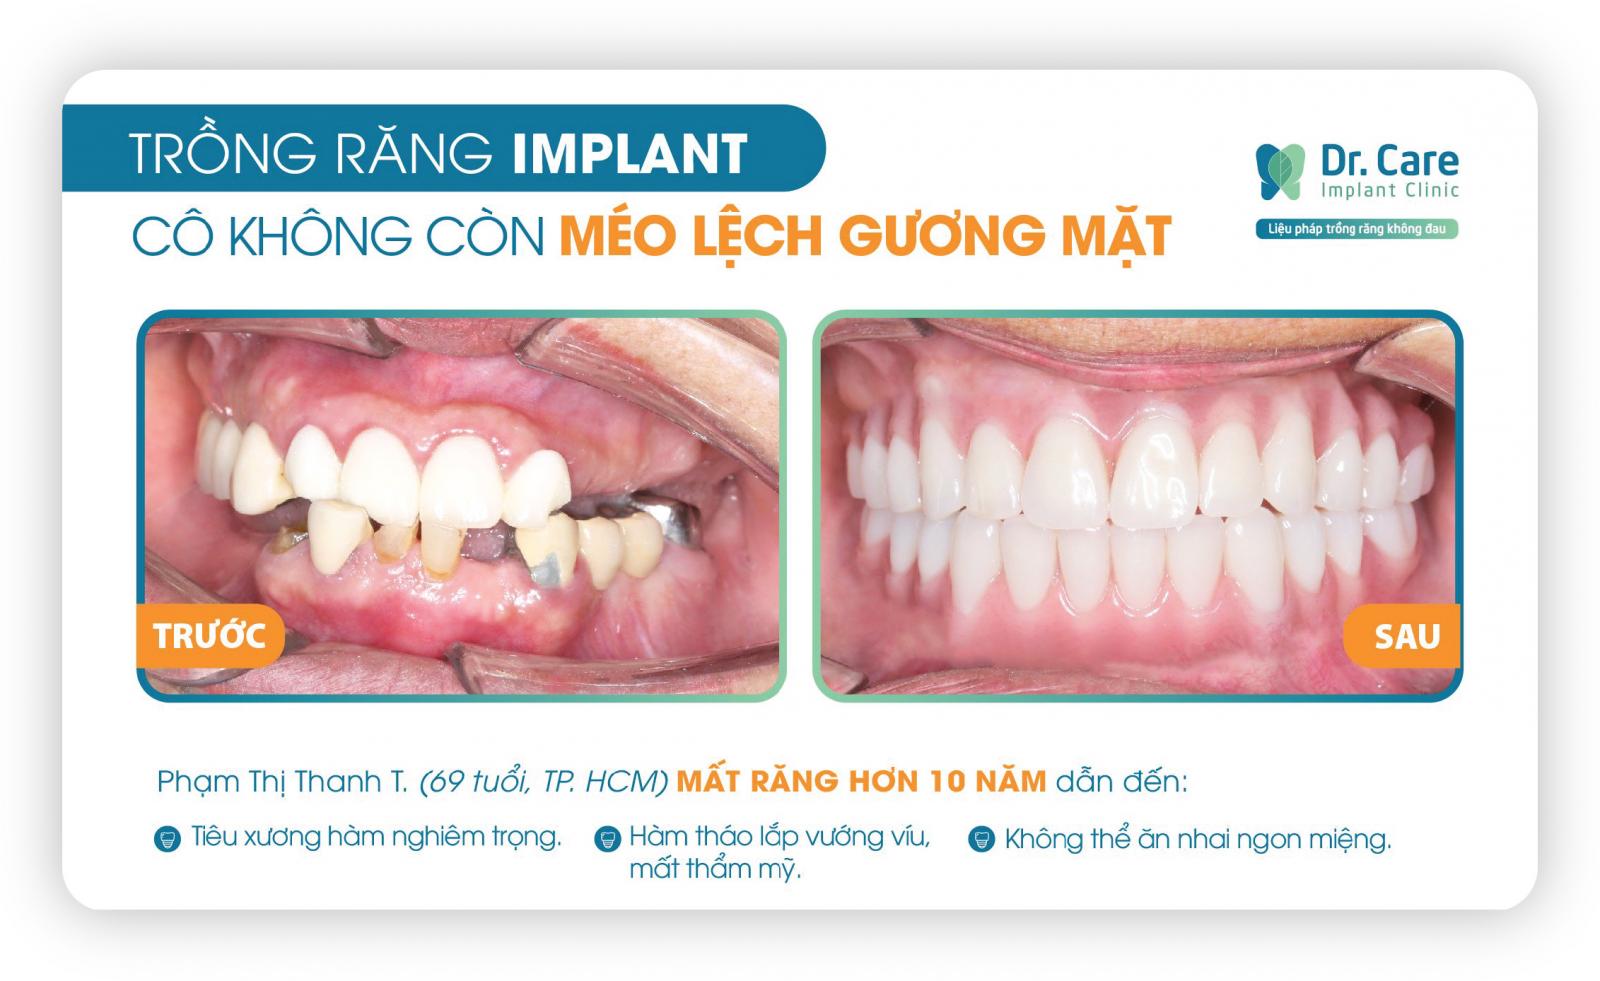 Thời gian trồng răng bằng trụ Implant Global D In – Kone là bao lâu?